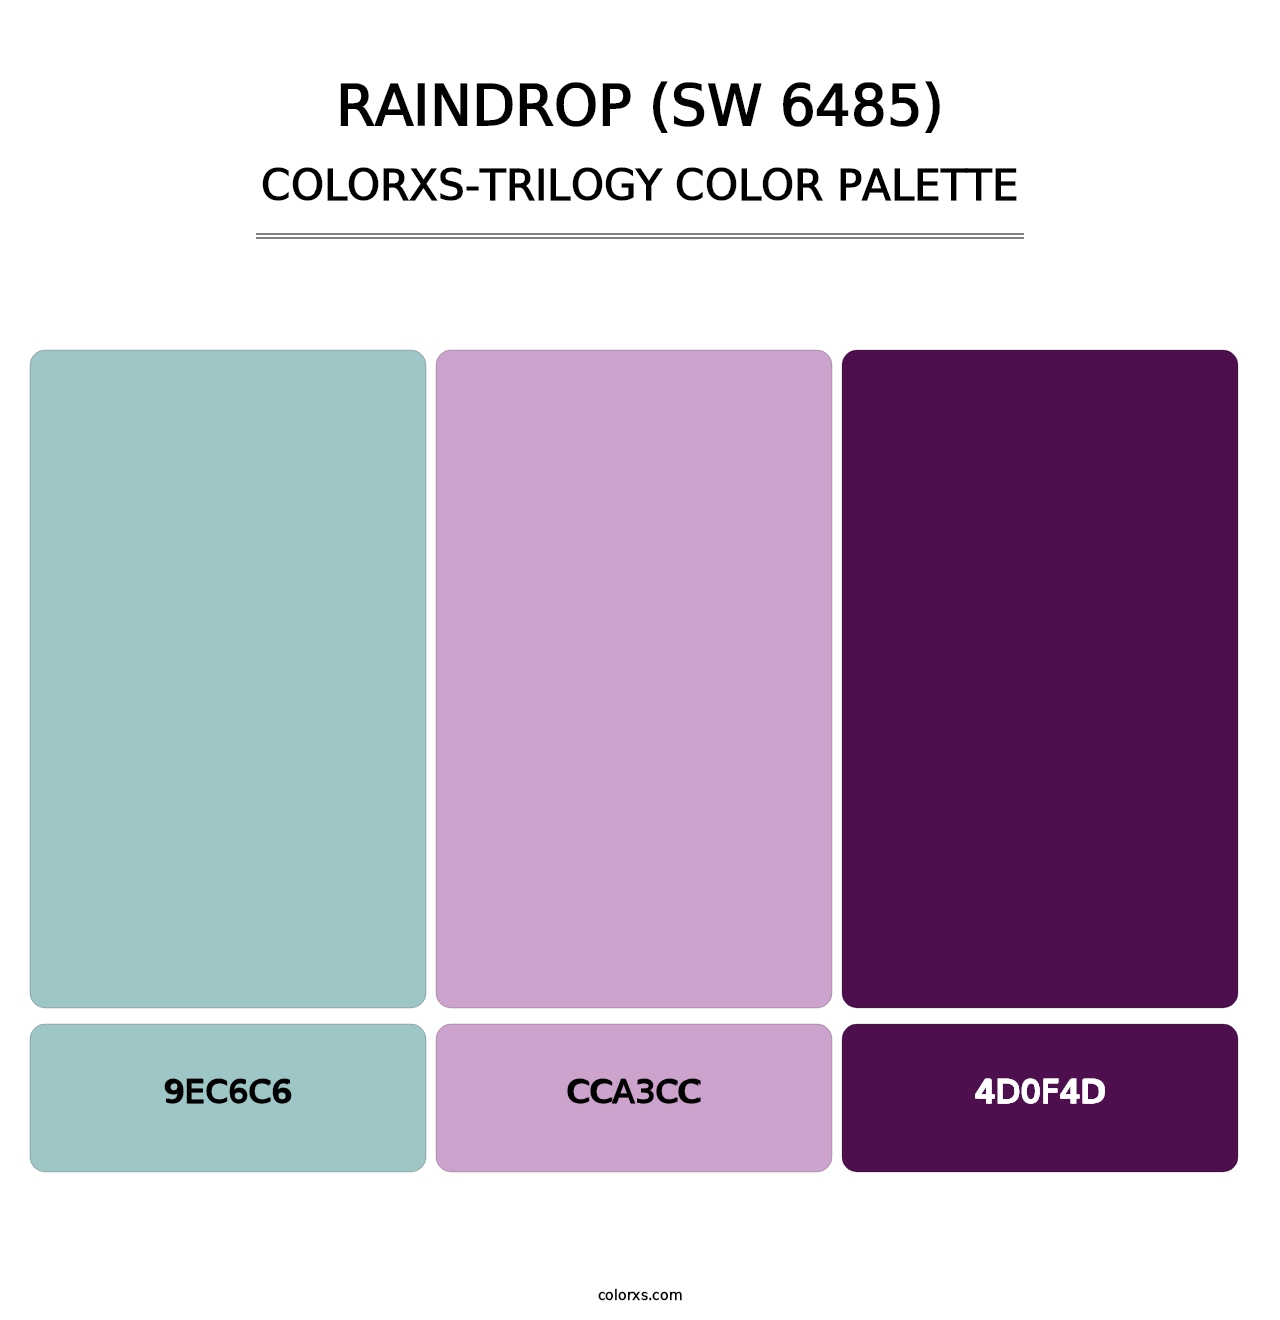 Raindrop (SW 6485) - Colorxs Trilogy Palette